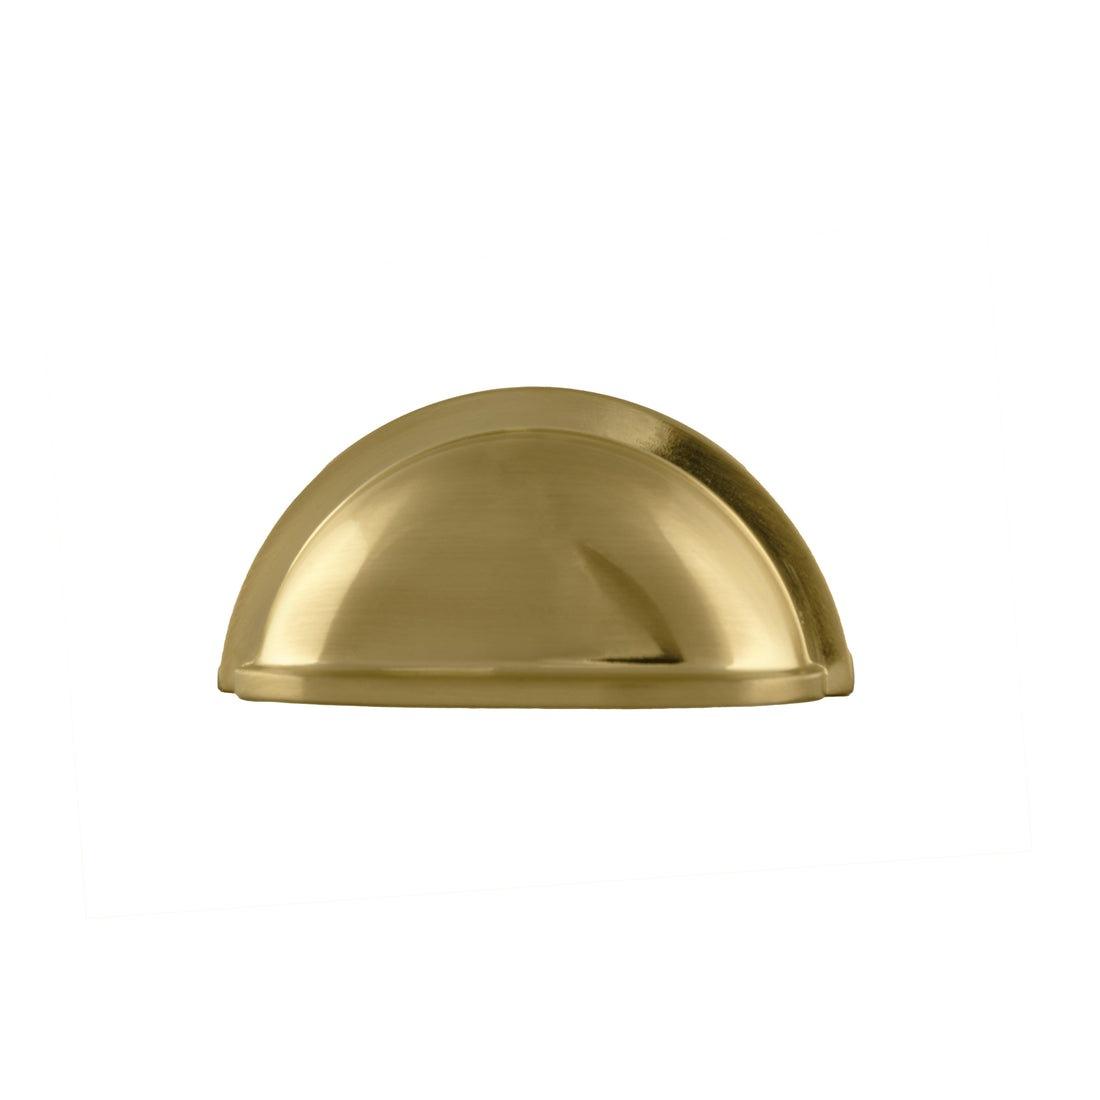 Exedra Pull Knob Knob 87mm / Gold / Zinc Alloy - M A N T A R A